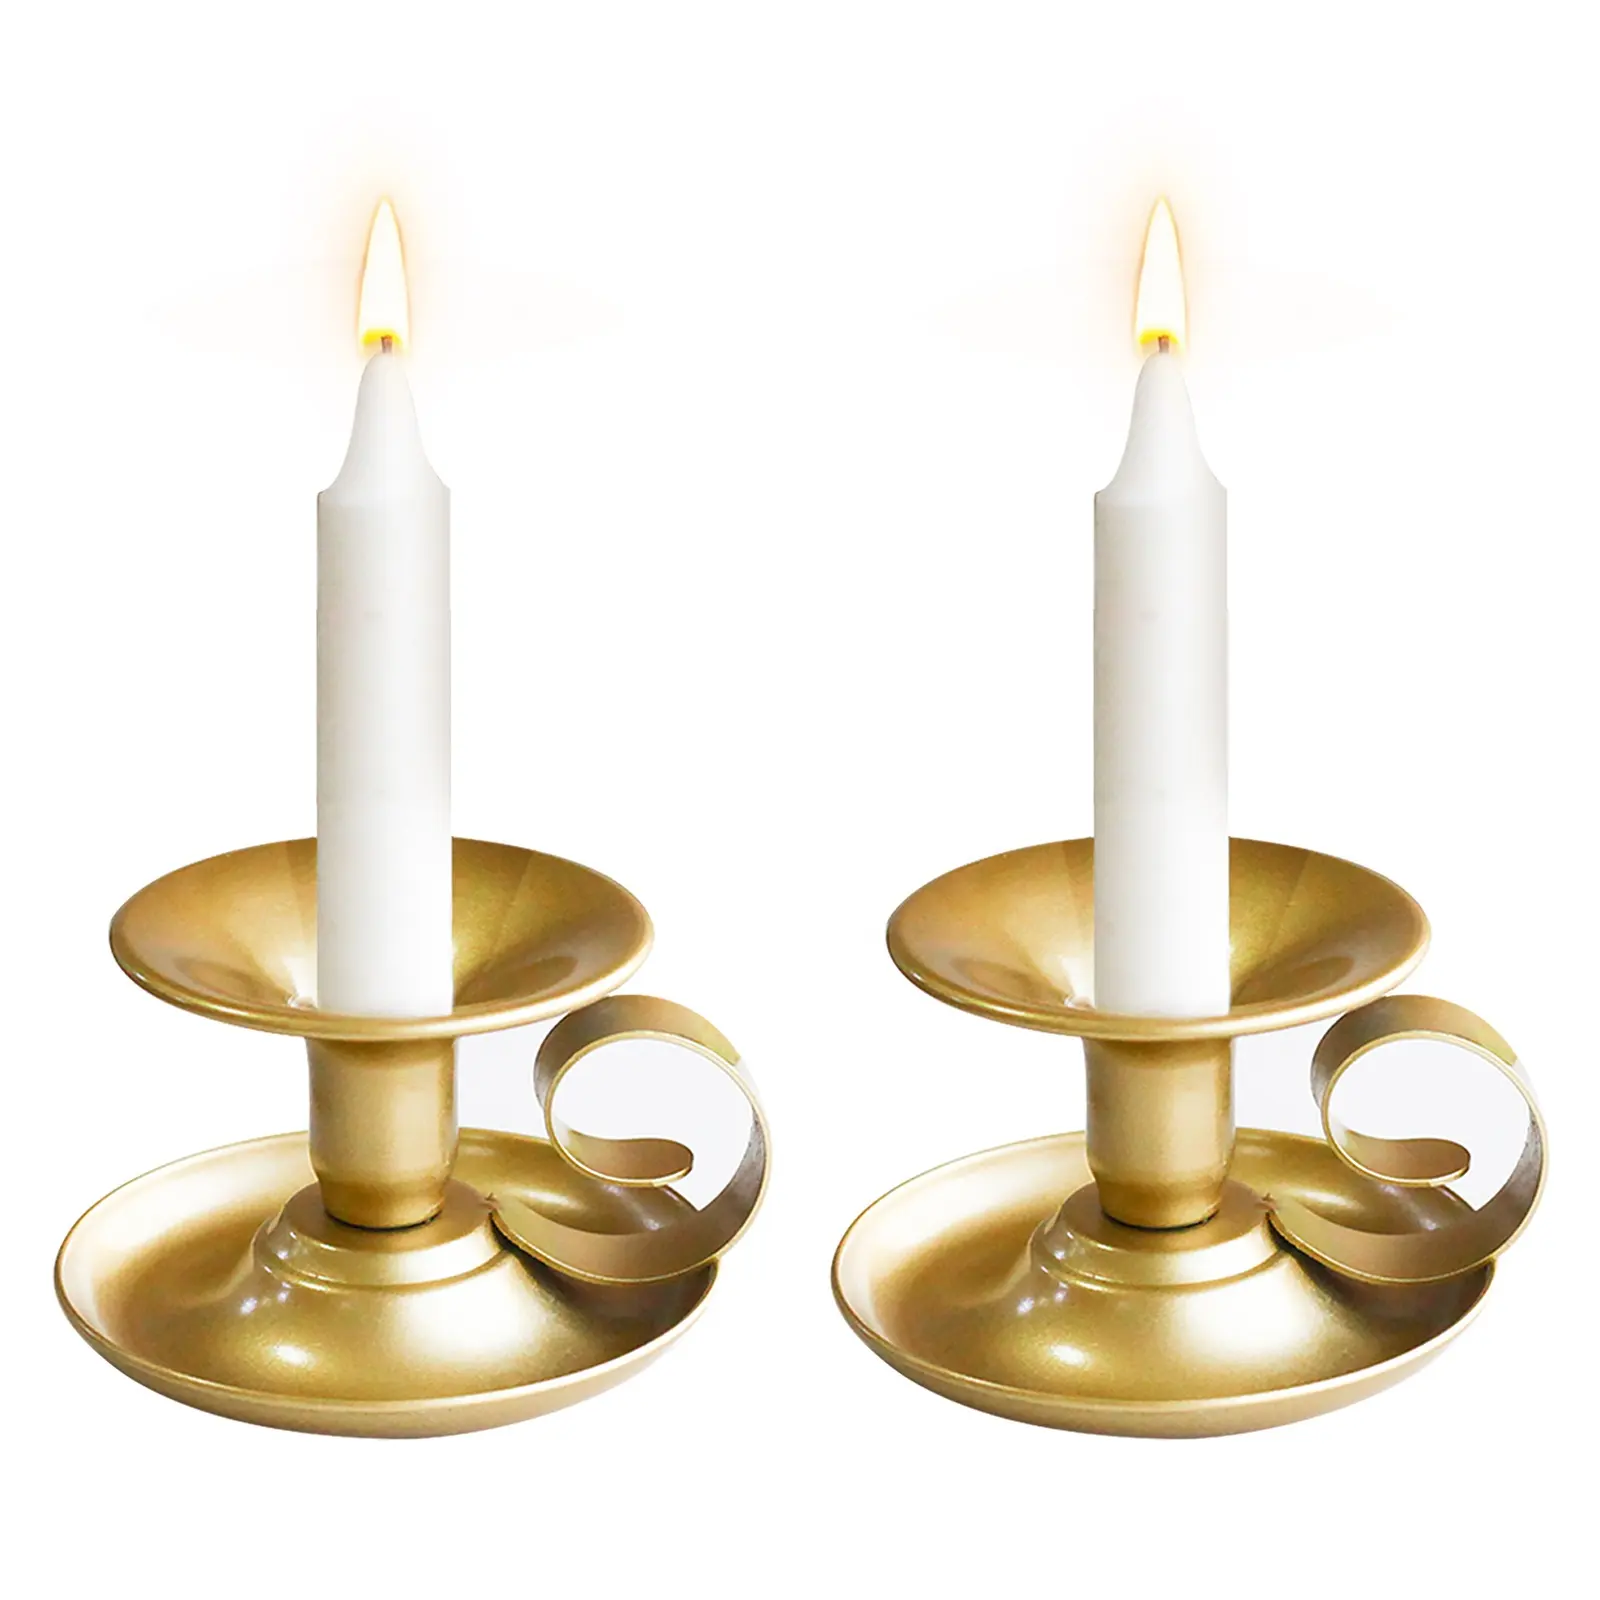 Suporte de vela decorativo, suporte de velas para casamento